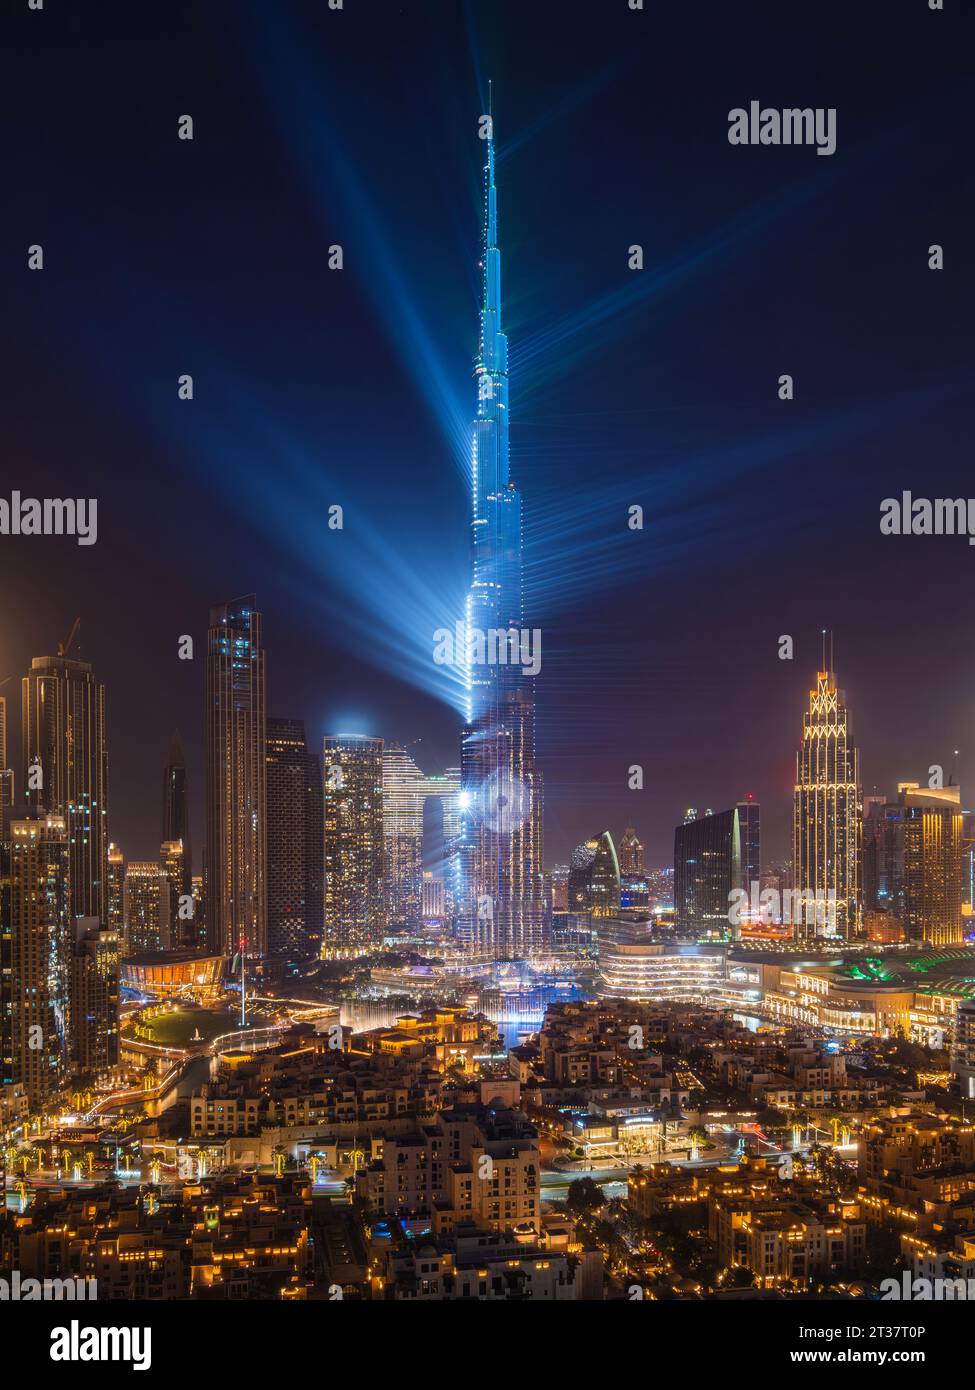 Futuristic Dubai cityscape showing the famous Burj Khalifa light show in Dubai, United Arab Emirates (UAE). Stock Photo